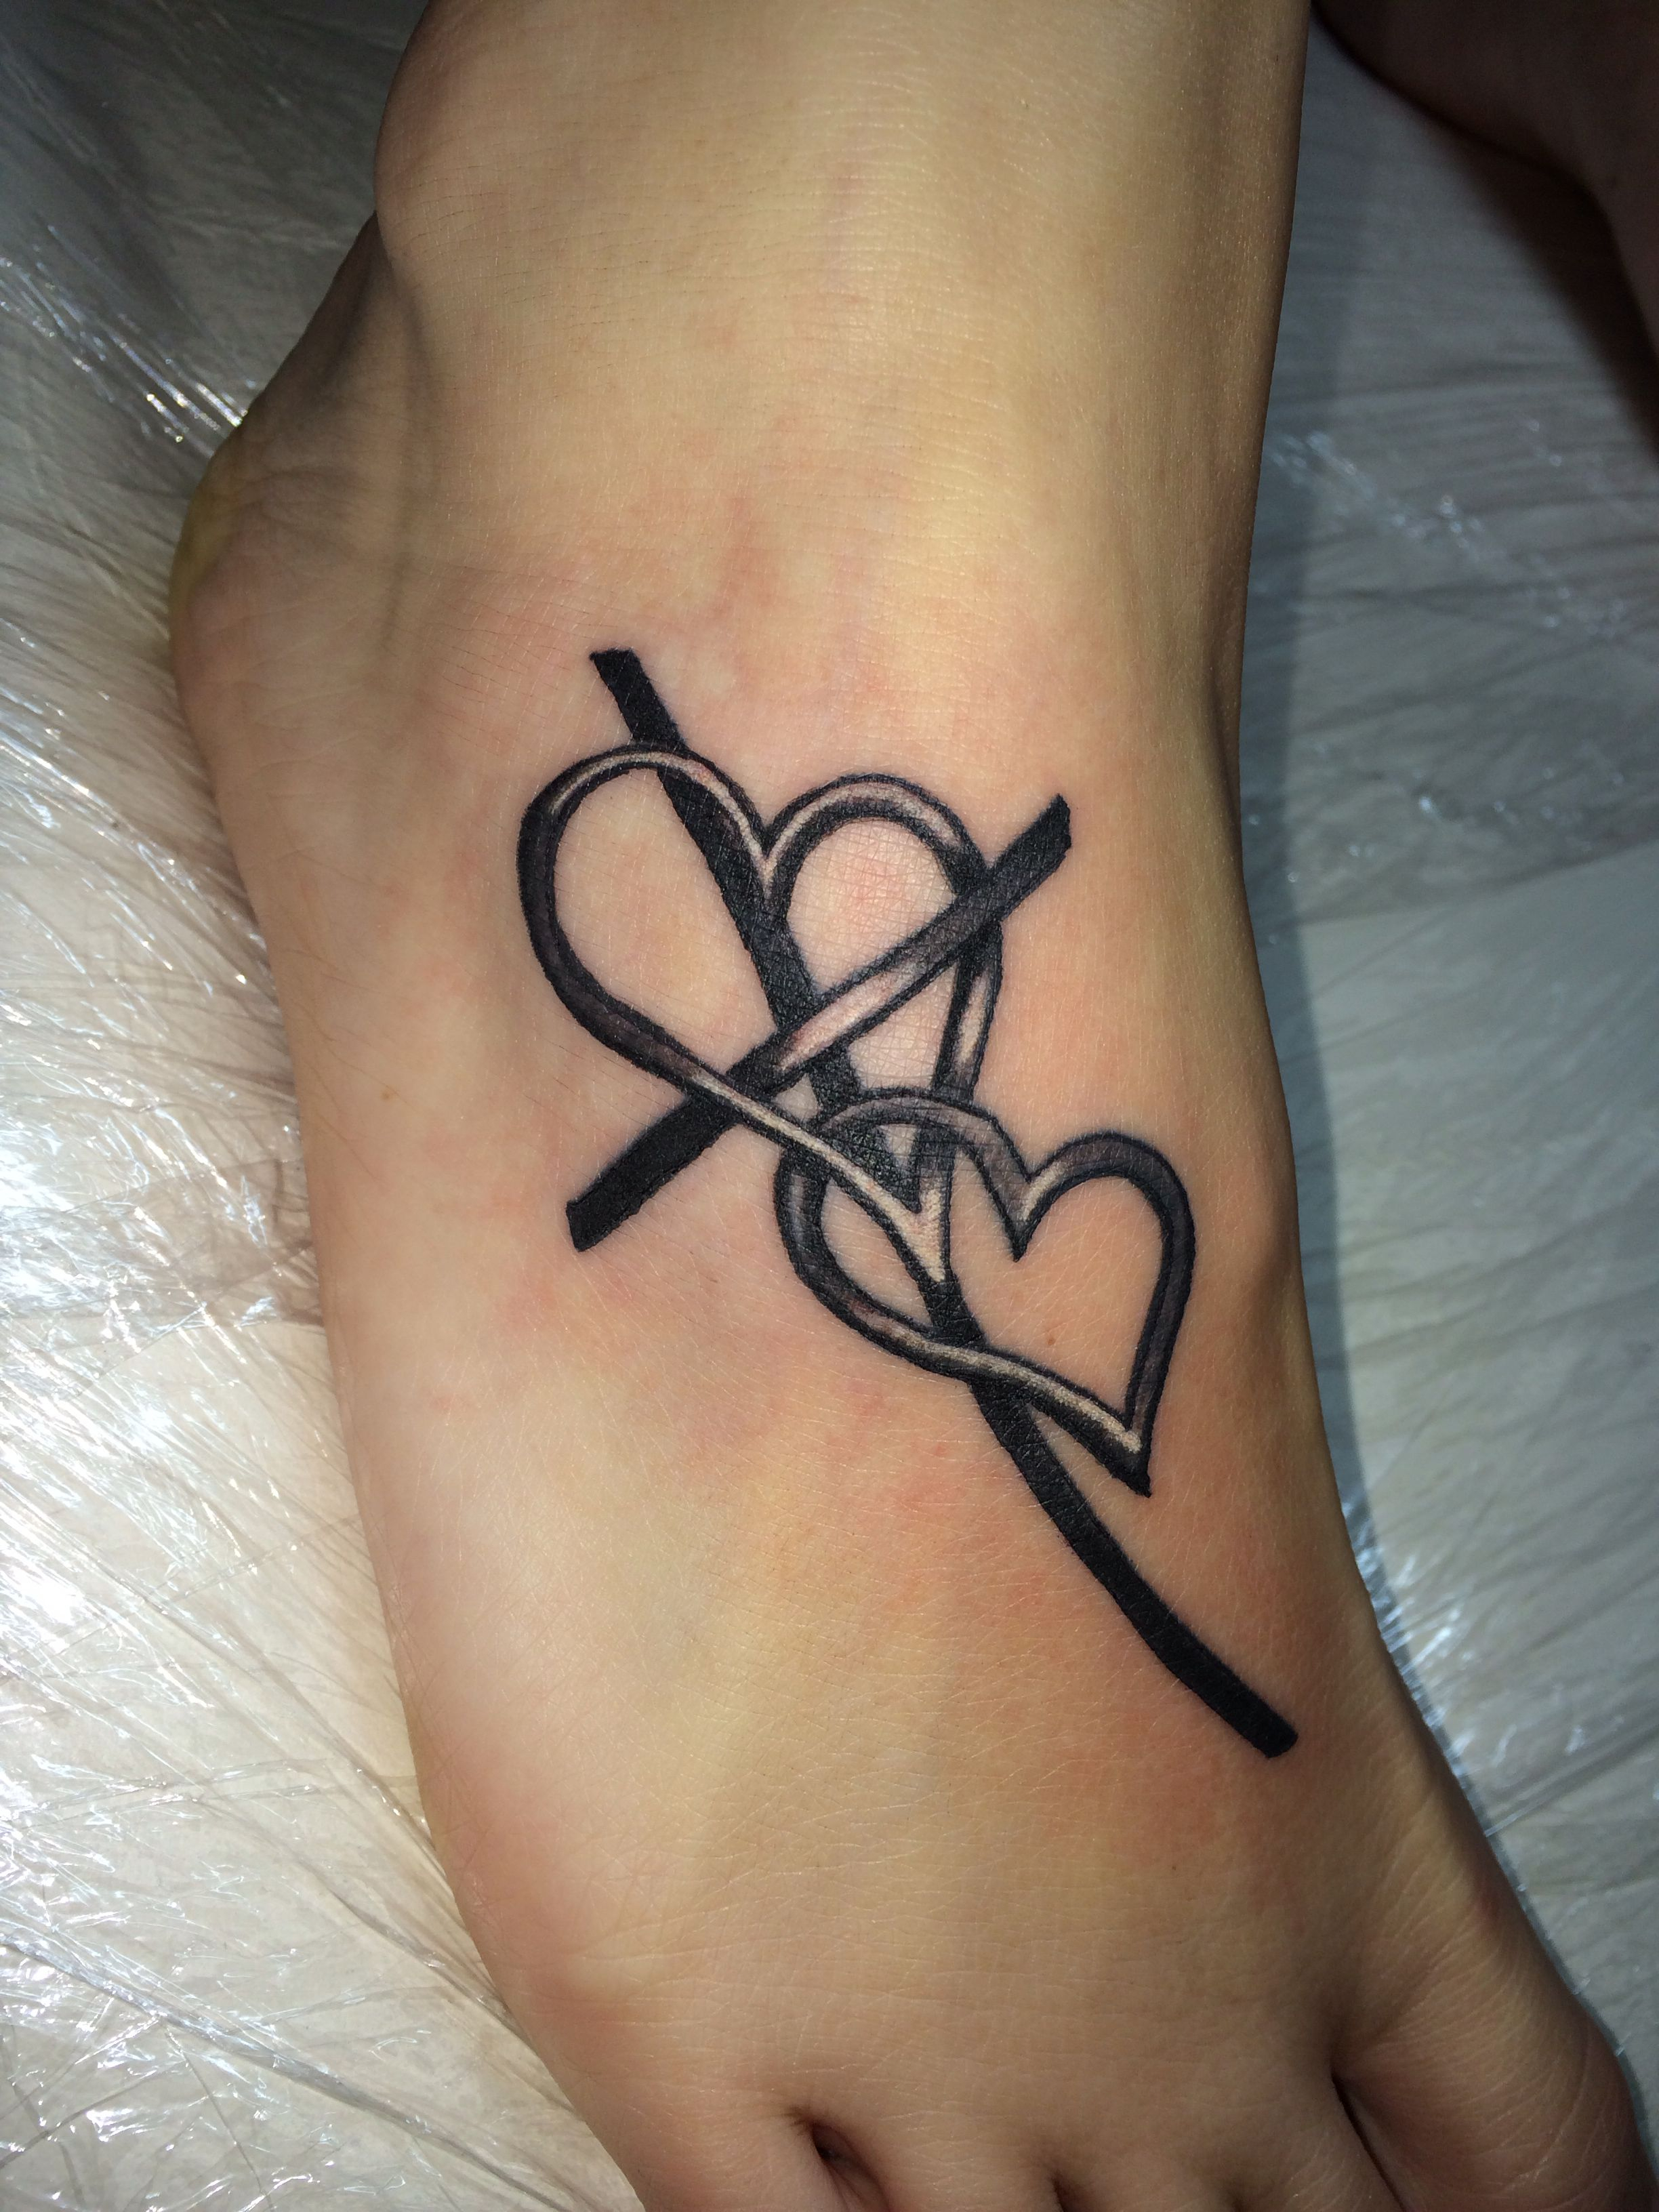 Cross Tattoo Cross With Heart Tattoo Foot Tattoo Tattoos throughout dimensions 2448 X 3264